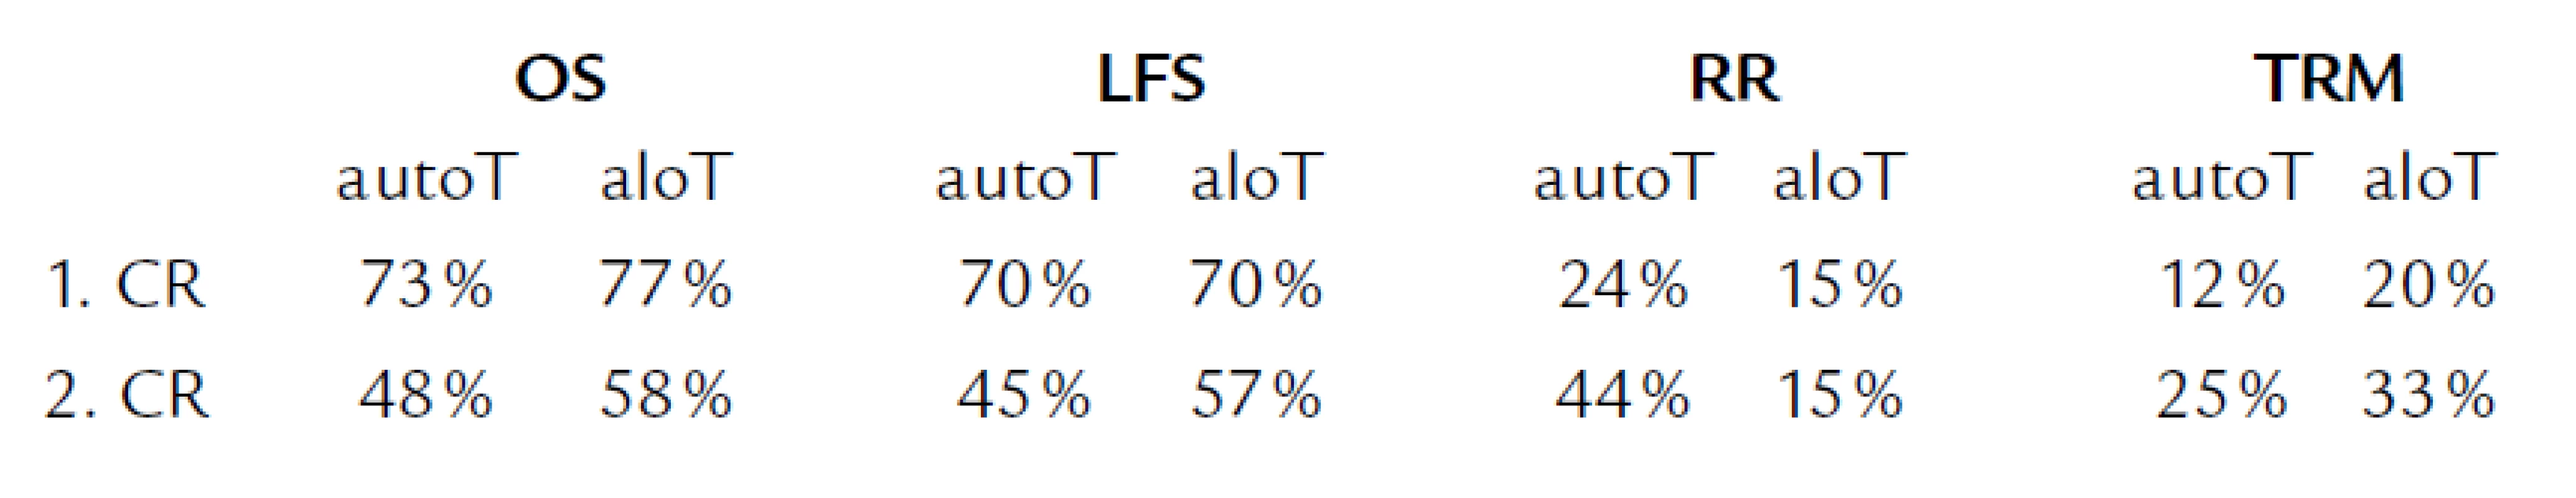 Výsledky autoTKB a aloTKB u APL v éře ATRA [30,35].